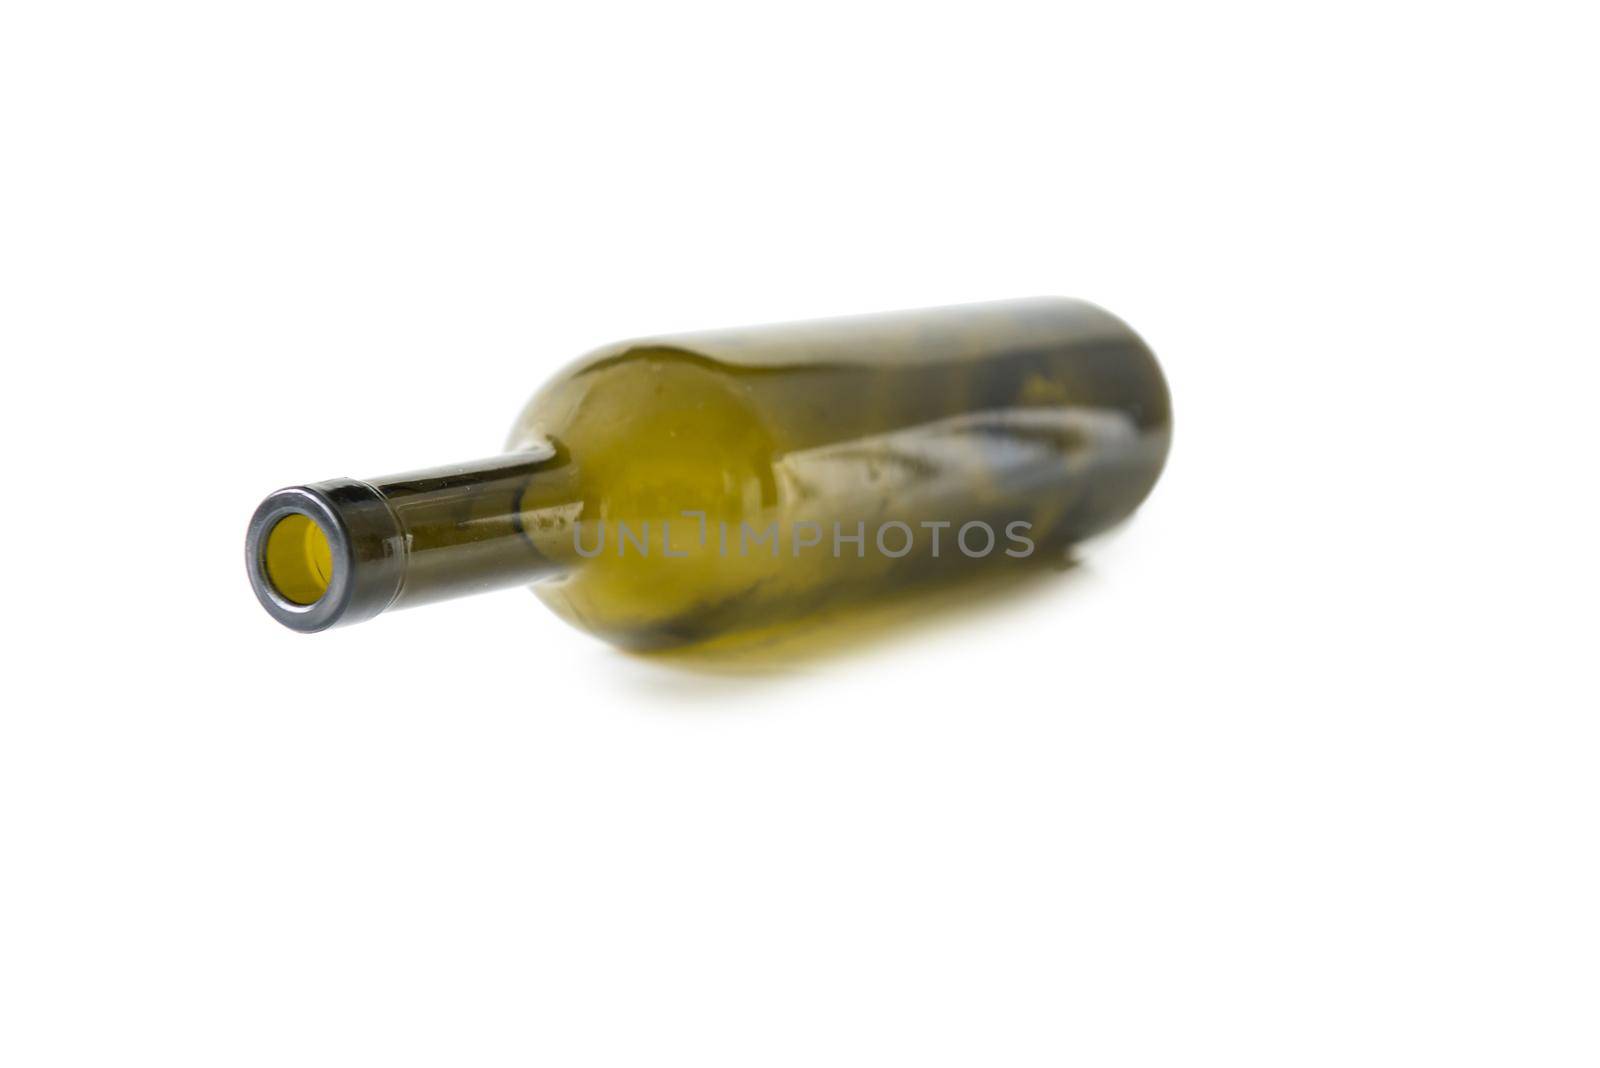 Recyclable green glass bottle by tan4ikk1